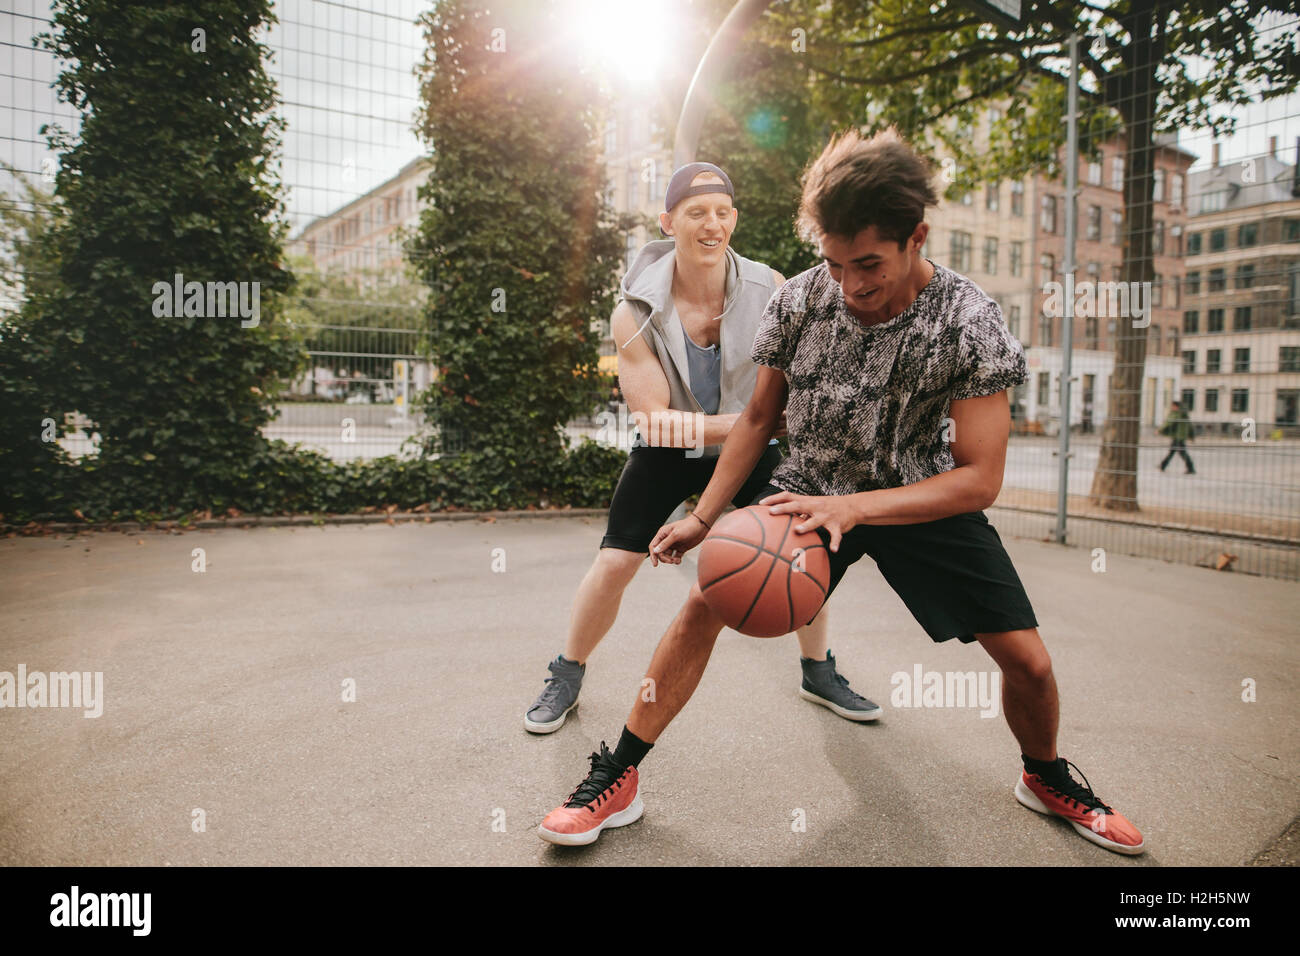 Zwei junge Mann am Basketballplatz mit Ball dribbeln. Freunde auf Court Basketball zu spielen und Spaß haben. Stockfoto